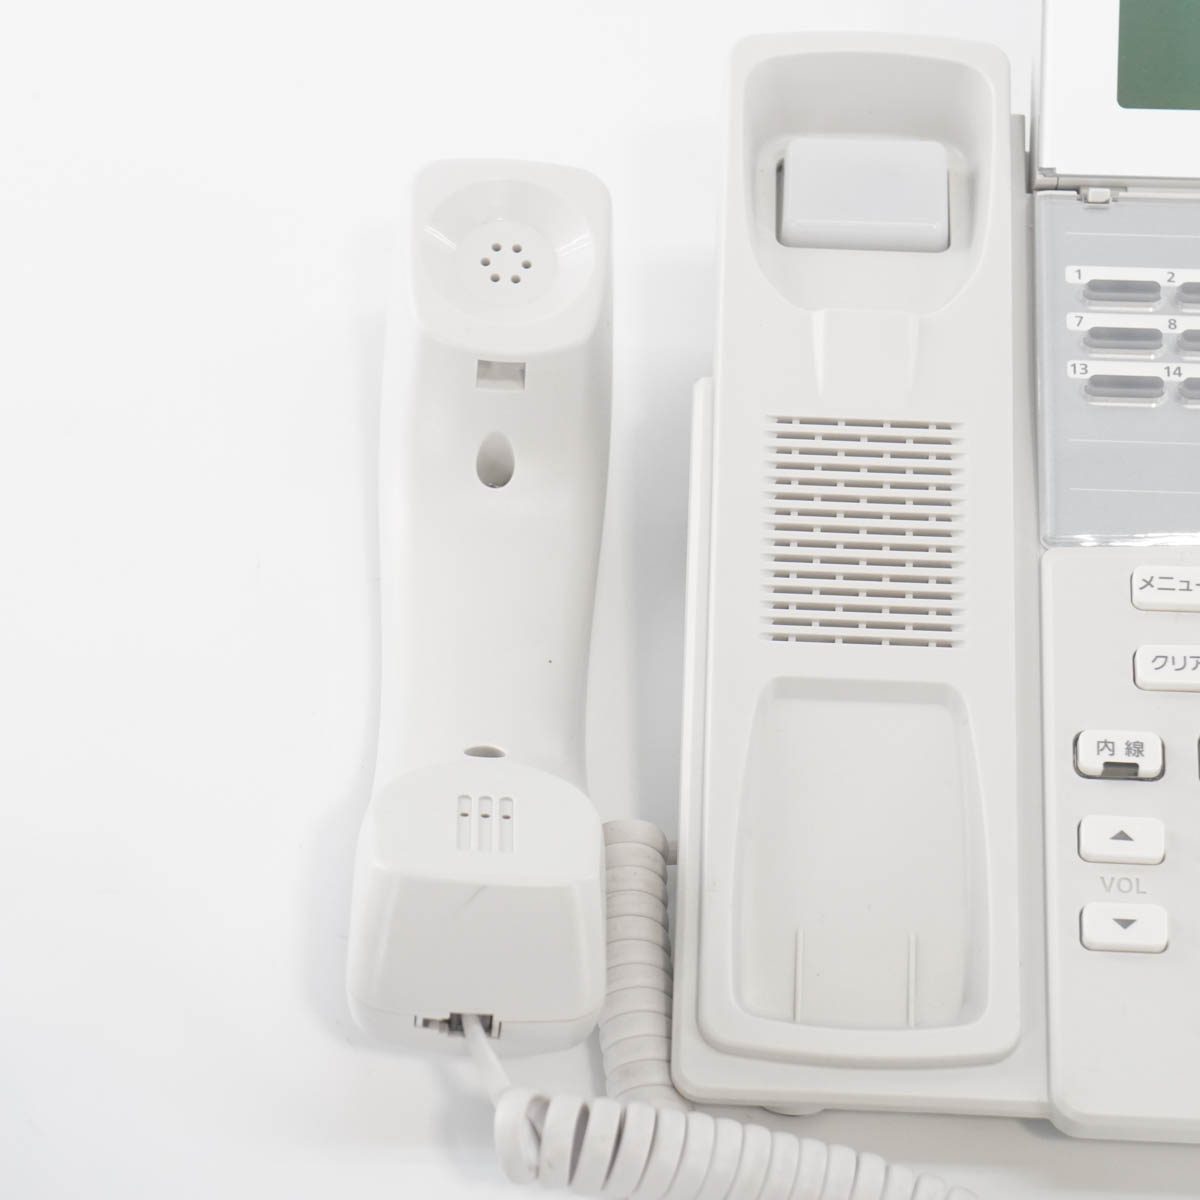 PG]USED 8日保証 セット 21年製 NTT αZX ZXM-ME-(1) 主装置 電話機 